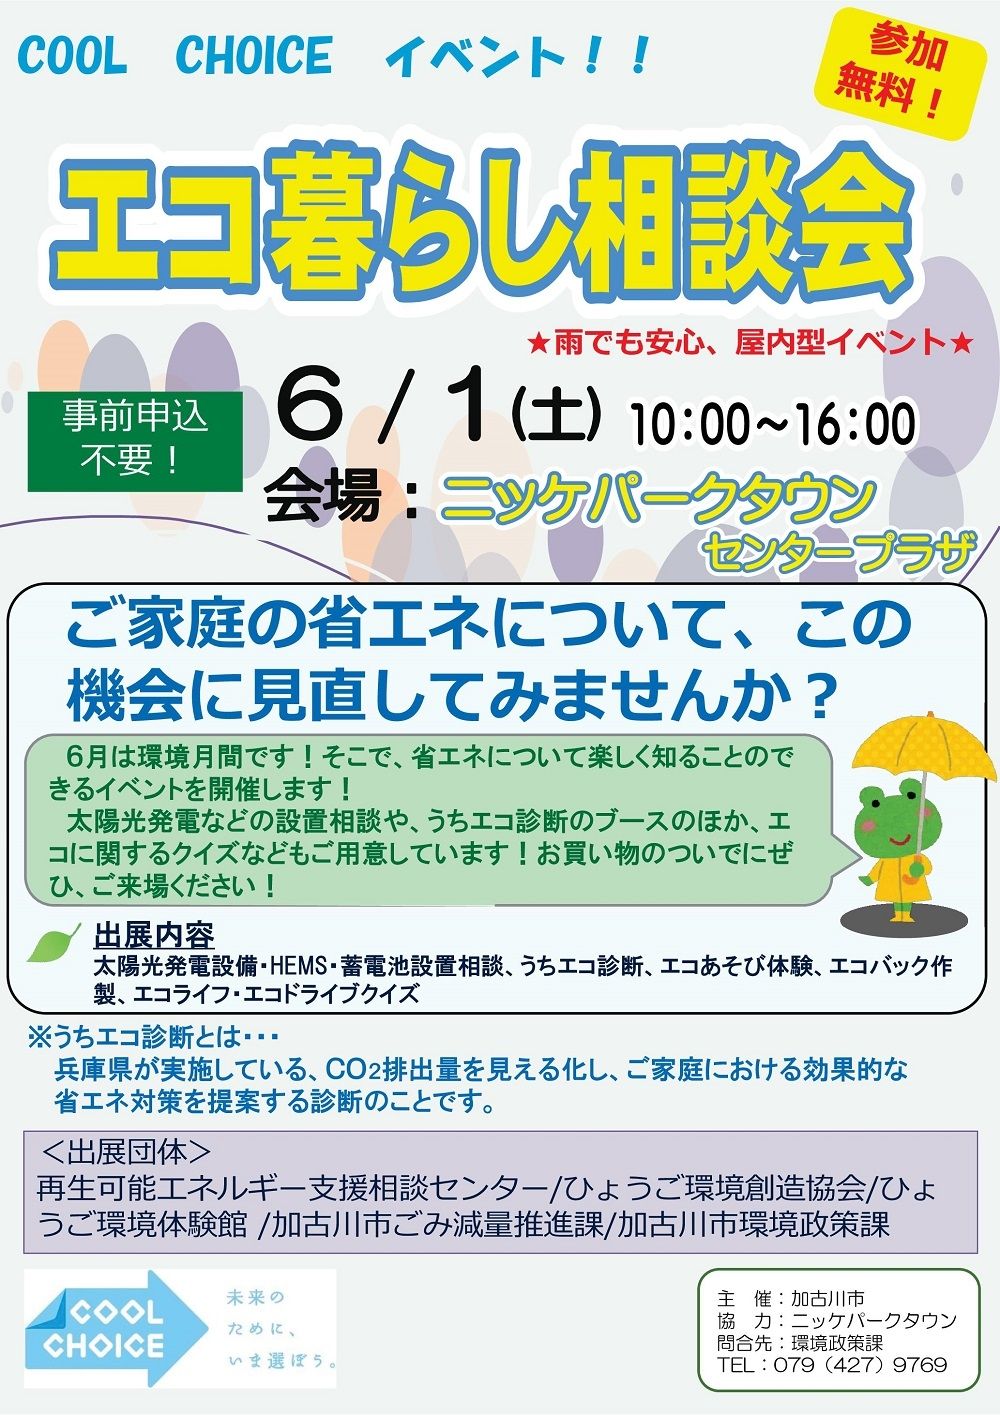 COOL CHOICEイベント「エコ暮らし相談会」が、令和元年6月1日（土）、ニッケパークタウンで開催されます！